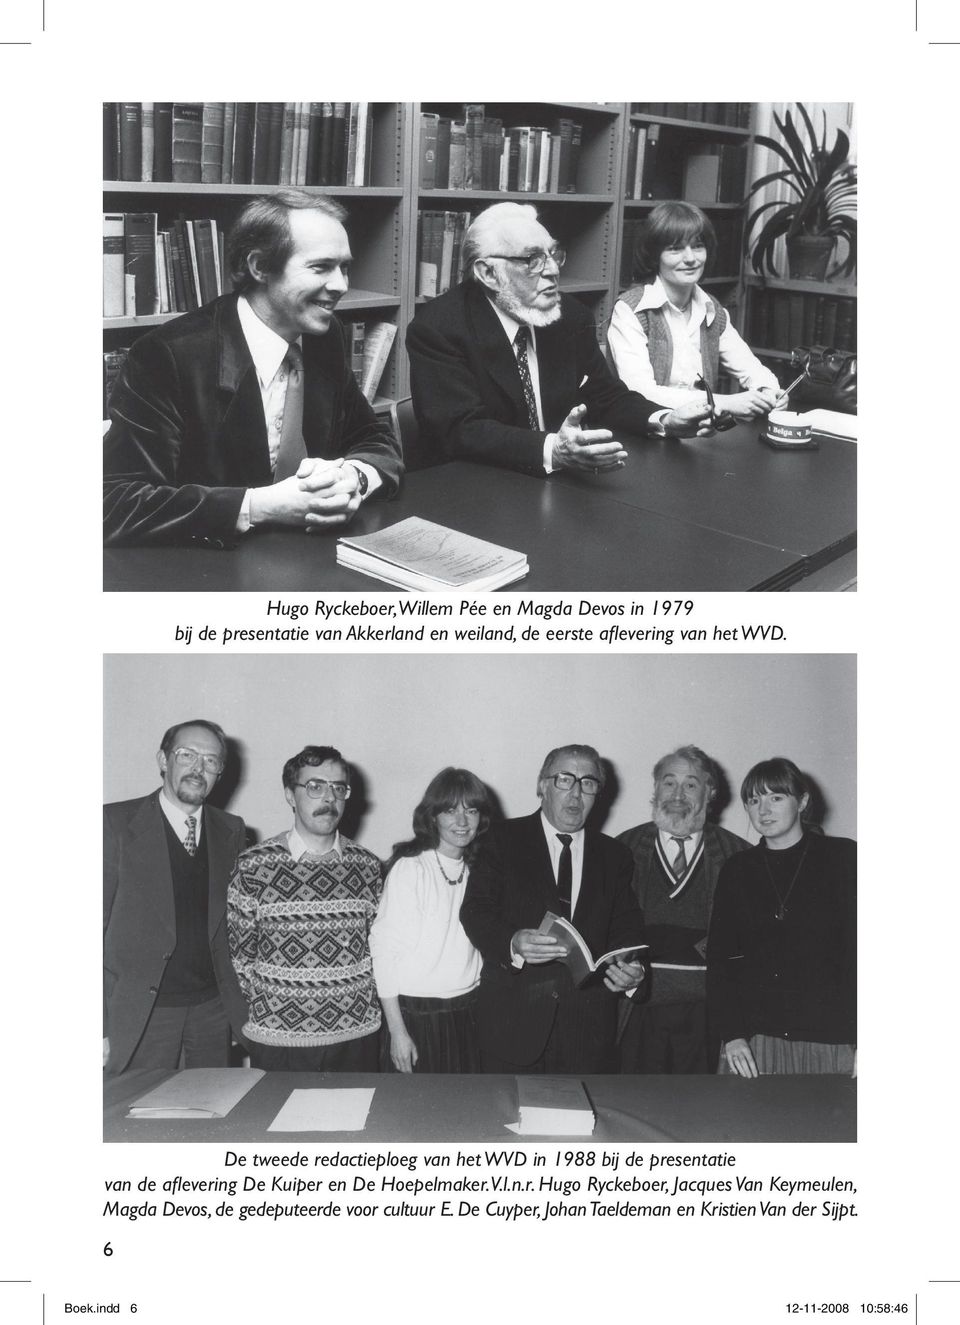 De tweede redactieploeg van het WVD in 1988 bij de presentatie van de aflevering De Kuiper en De